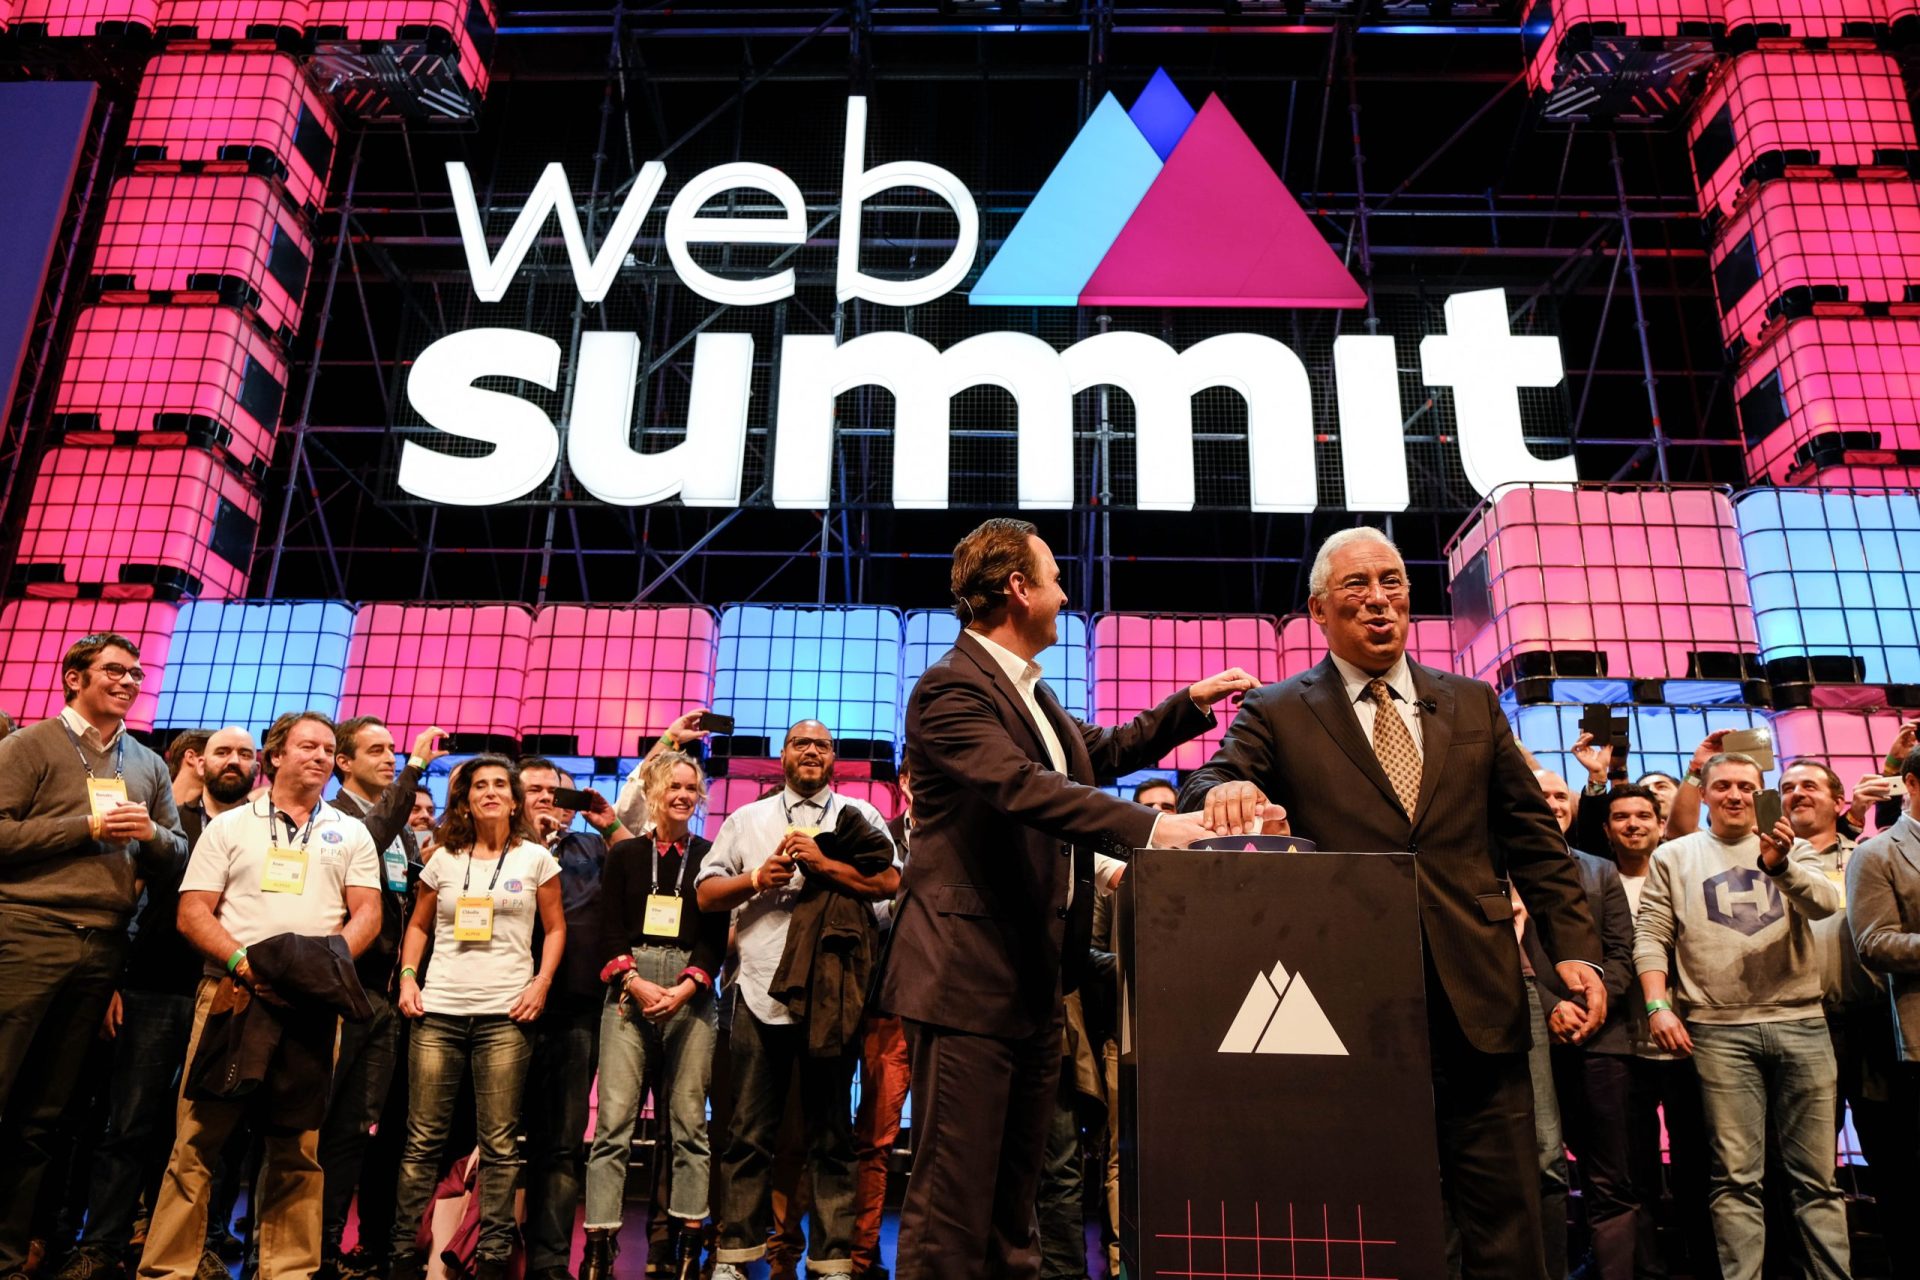 Medina sobre Web Summit: “Ganhámos. E esta vitória tem muitos significados”